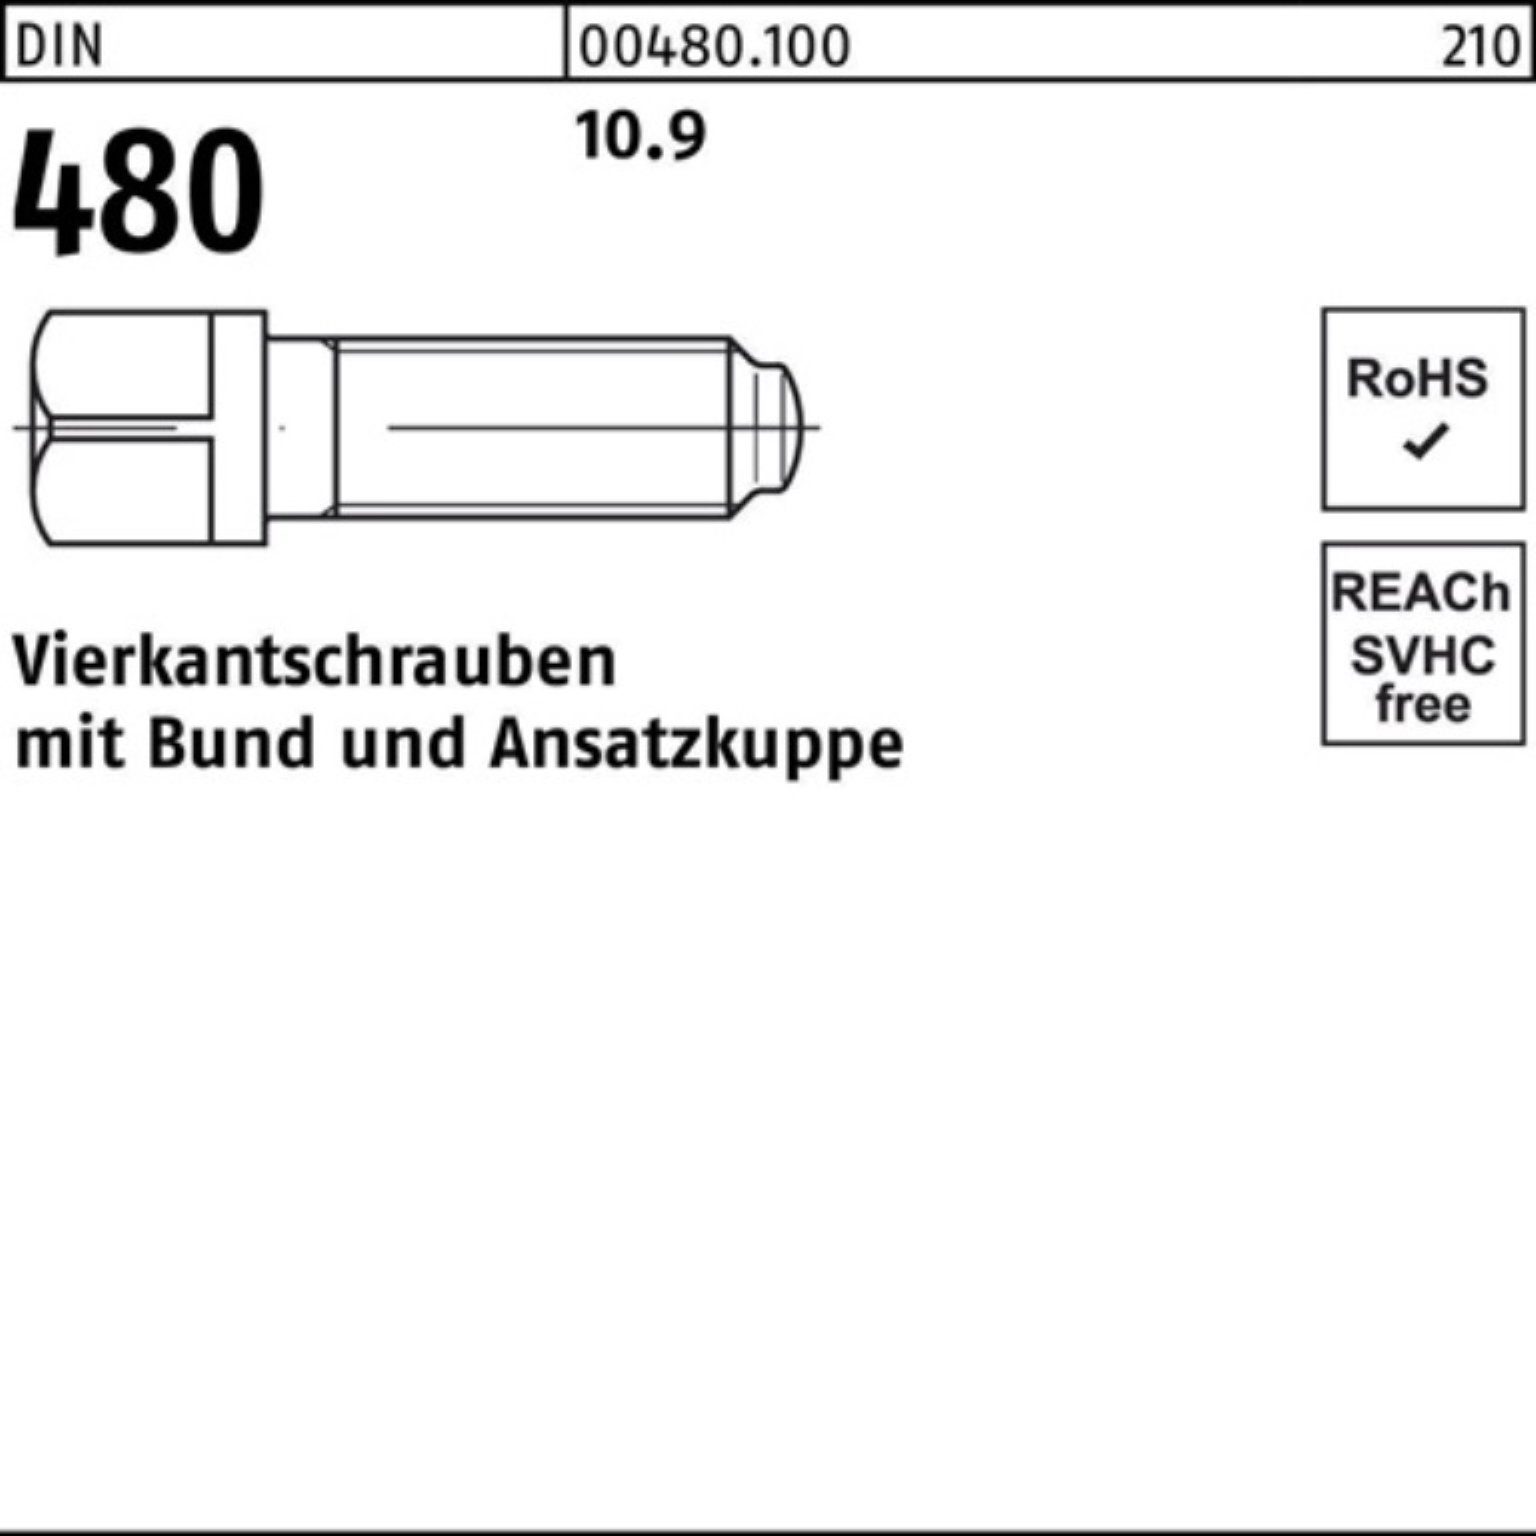 Reyher Schraube 100er Pack 60 50 480 Bund/Ansatzkuppe Vierkantschraube S DIN 10.9 M10x